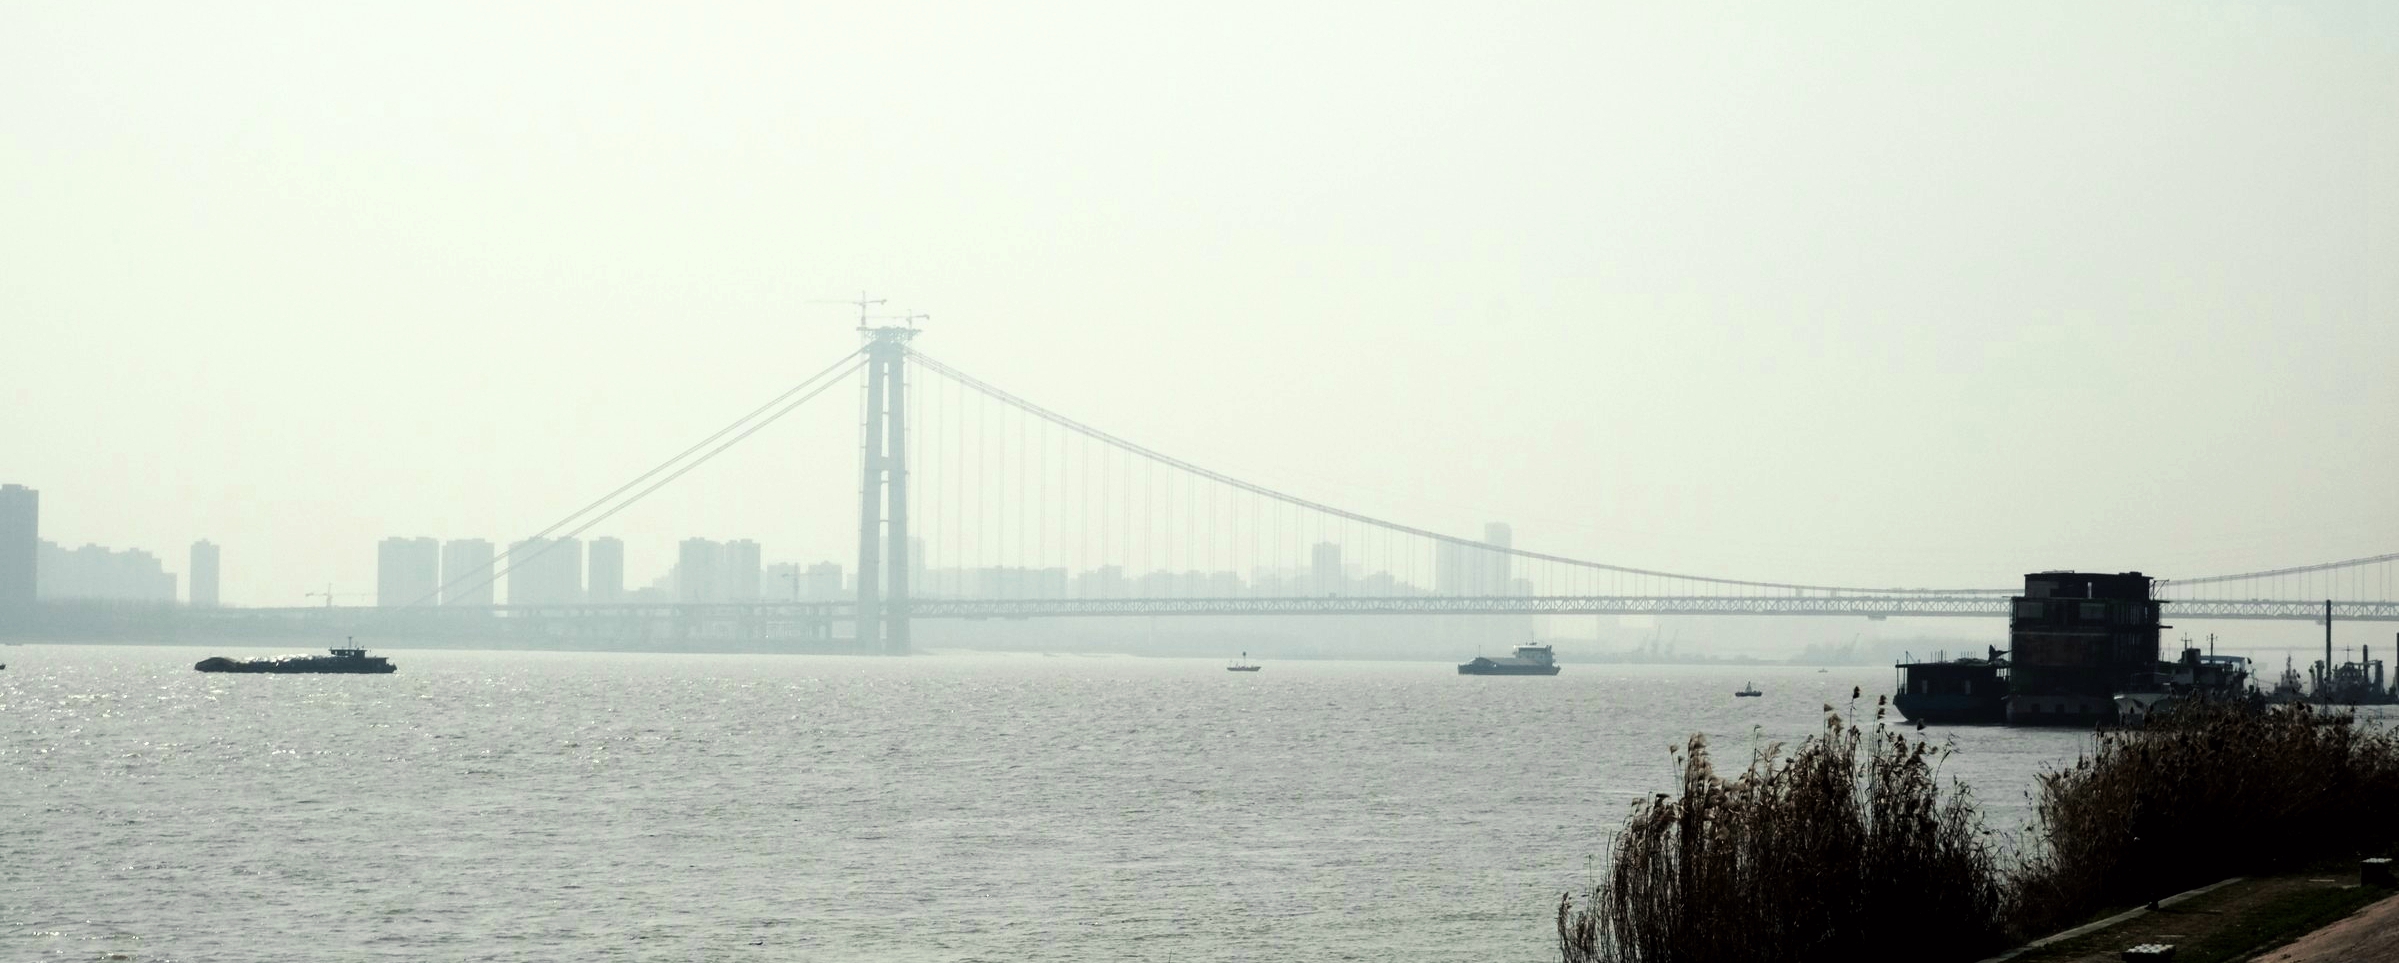 从这里往上游看,还有一座正在施工的桥梁,这就是杨泗港大桥.